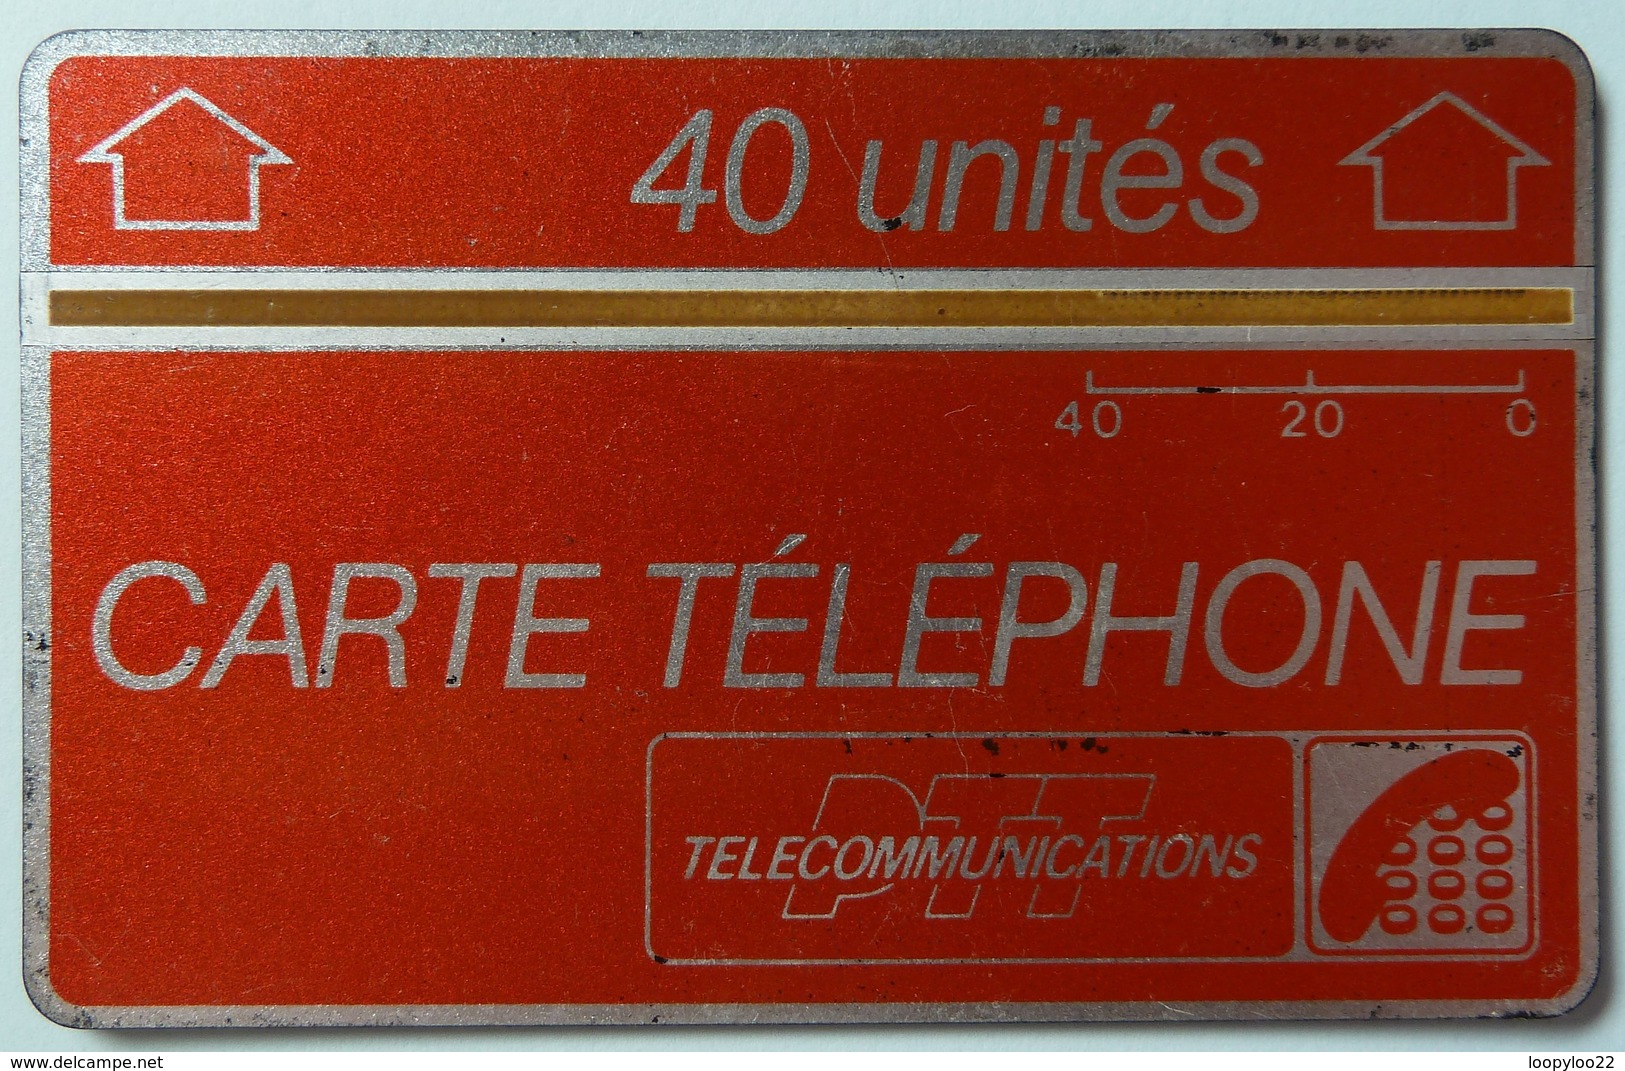 FRANCE - L&G - Landis & Gyr - 40 Units - Carte Telephone PTT - 607F - Used - RRR - Interner Gebrauch